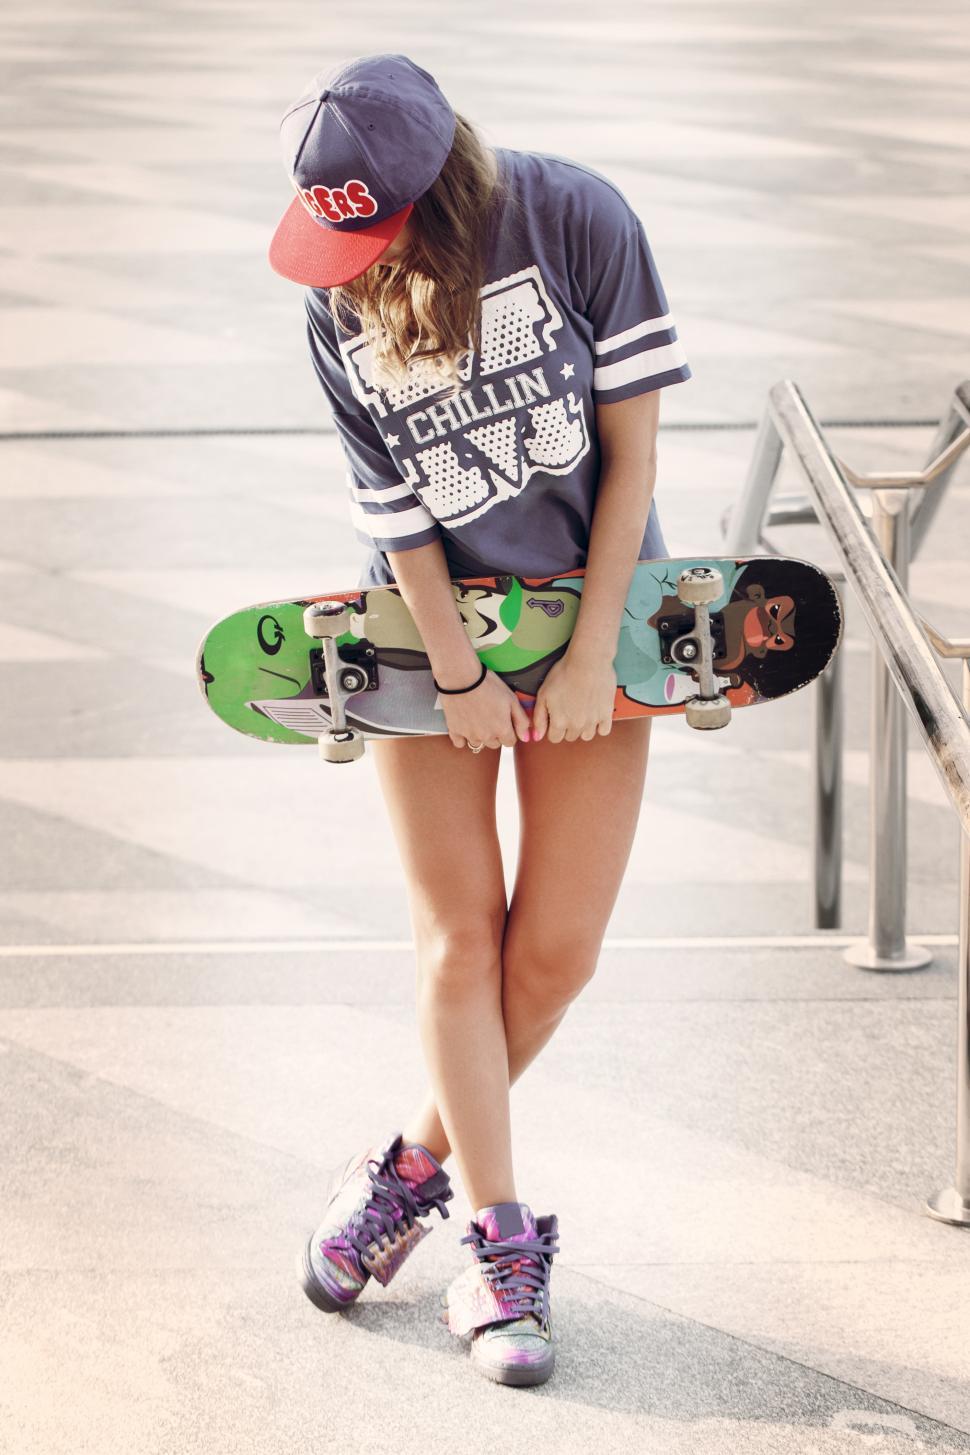 Free Image of Skater girl at the skatepark 